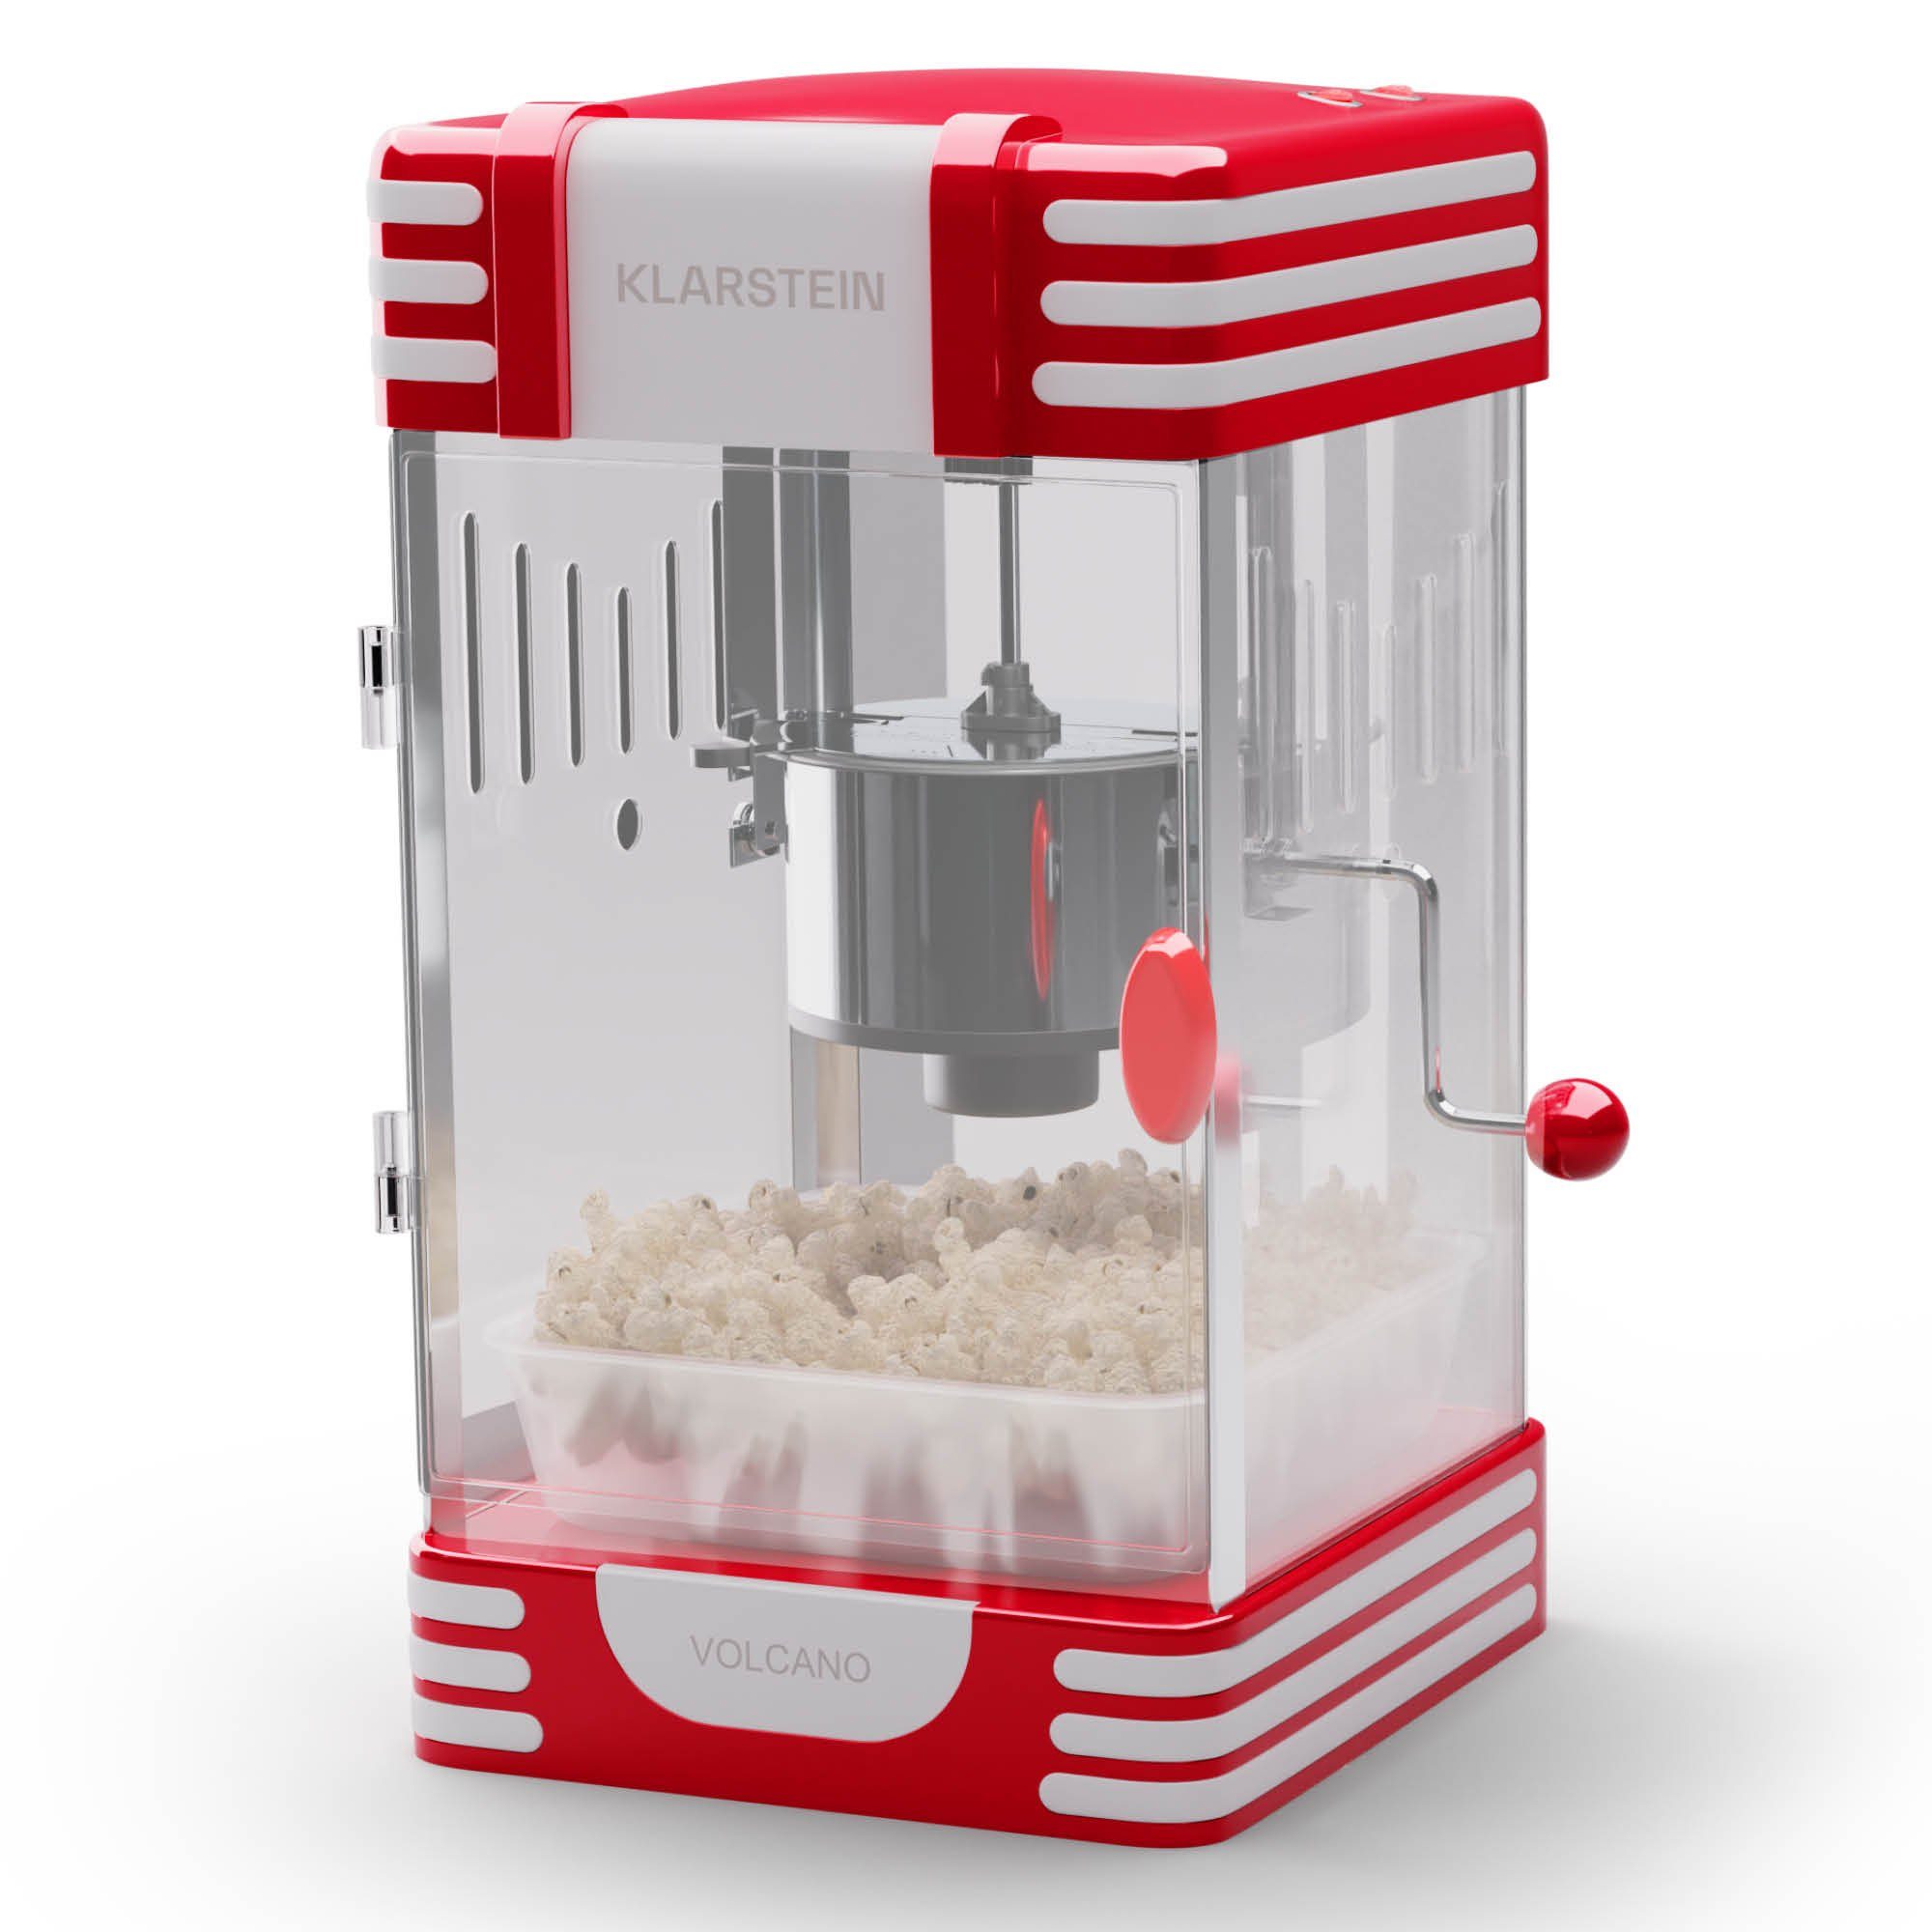 Klarstein Popcornmaschine Volcano, Popcornmaker Popcornautomat Popkornmaschine Popcorn mit Öl Rot